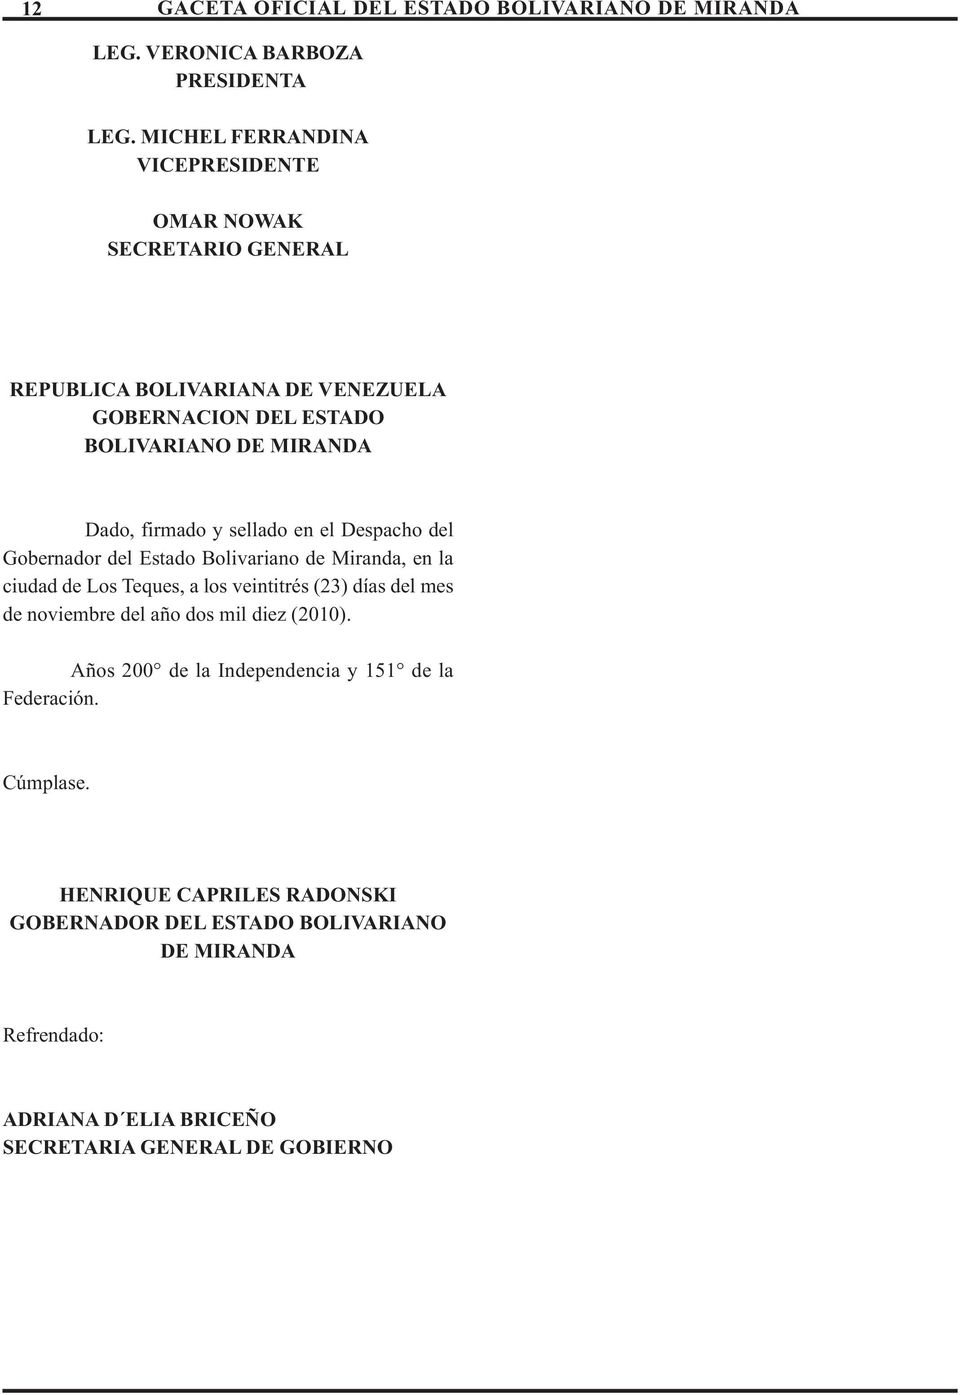 firmado y sellado en el Despacho del Gobernador del Estado Bolivariano de Miranda, en la ciudad de Los Teques, a los veintitrés (23) días del mes de